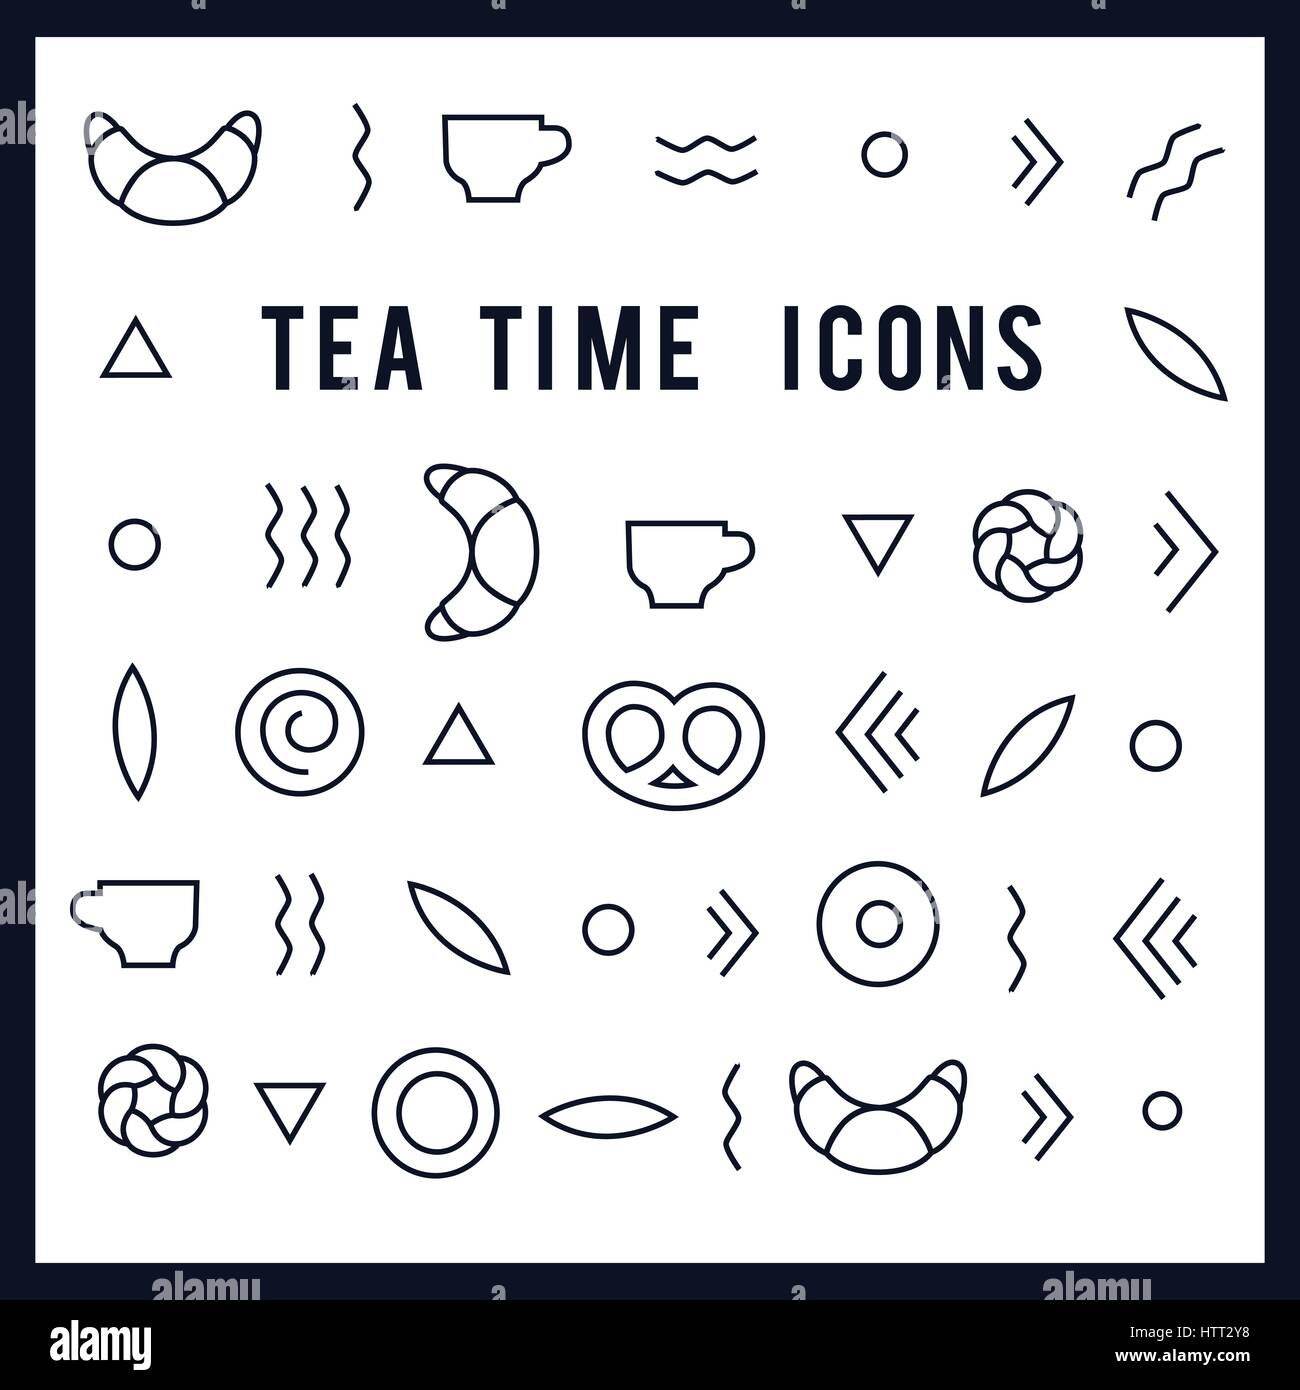 tea time vector icons Stock Vector